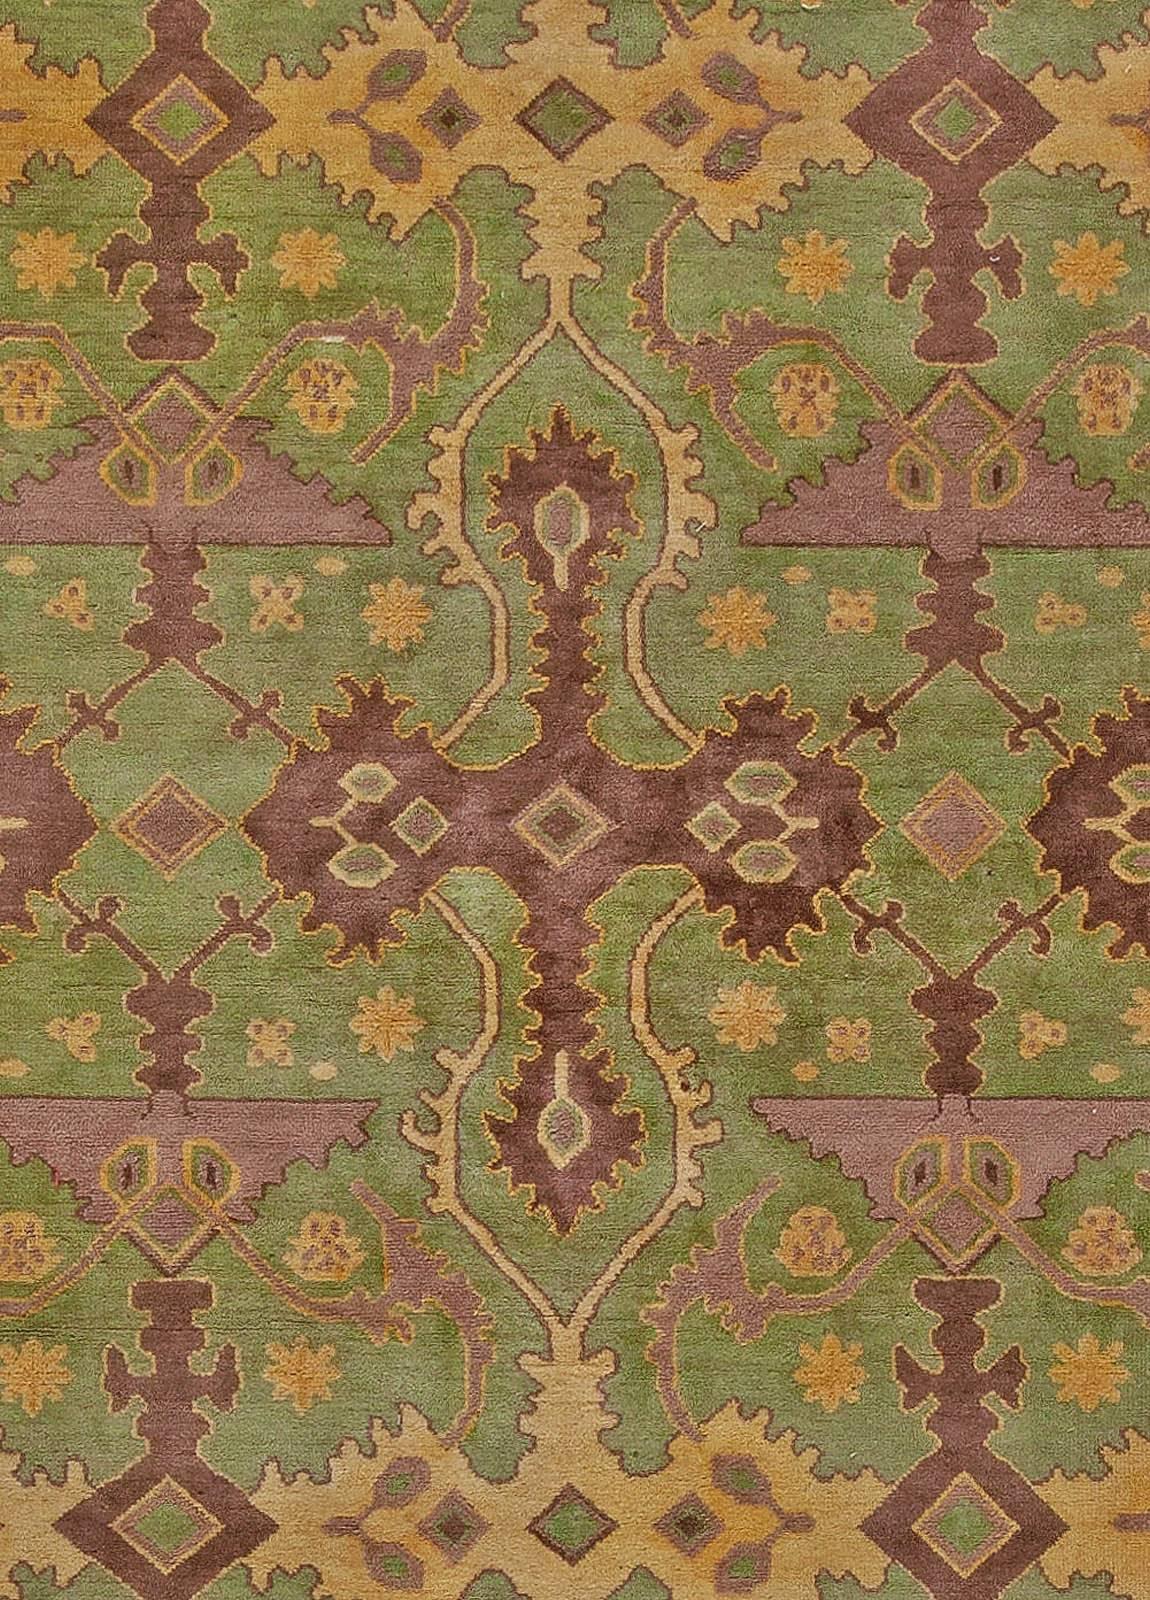 Vintage géométrique vert, violet tapis chinois en laine fait main
Taille : 13'5